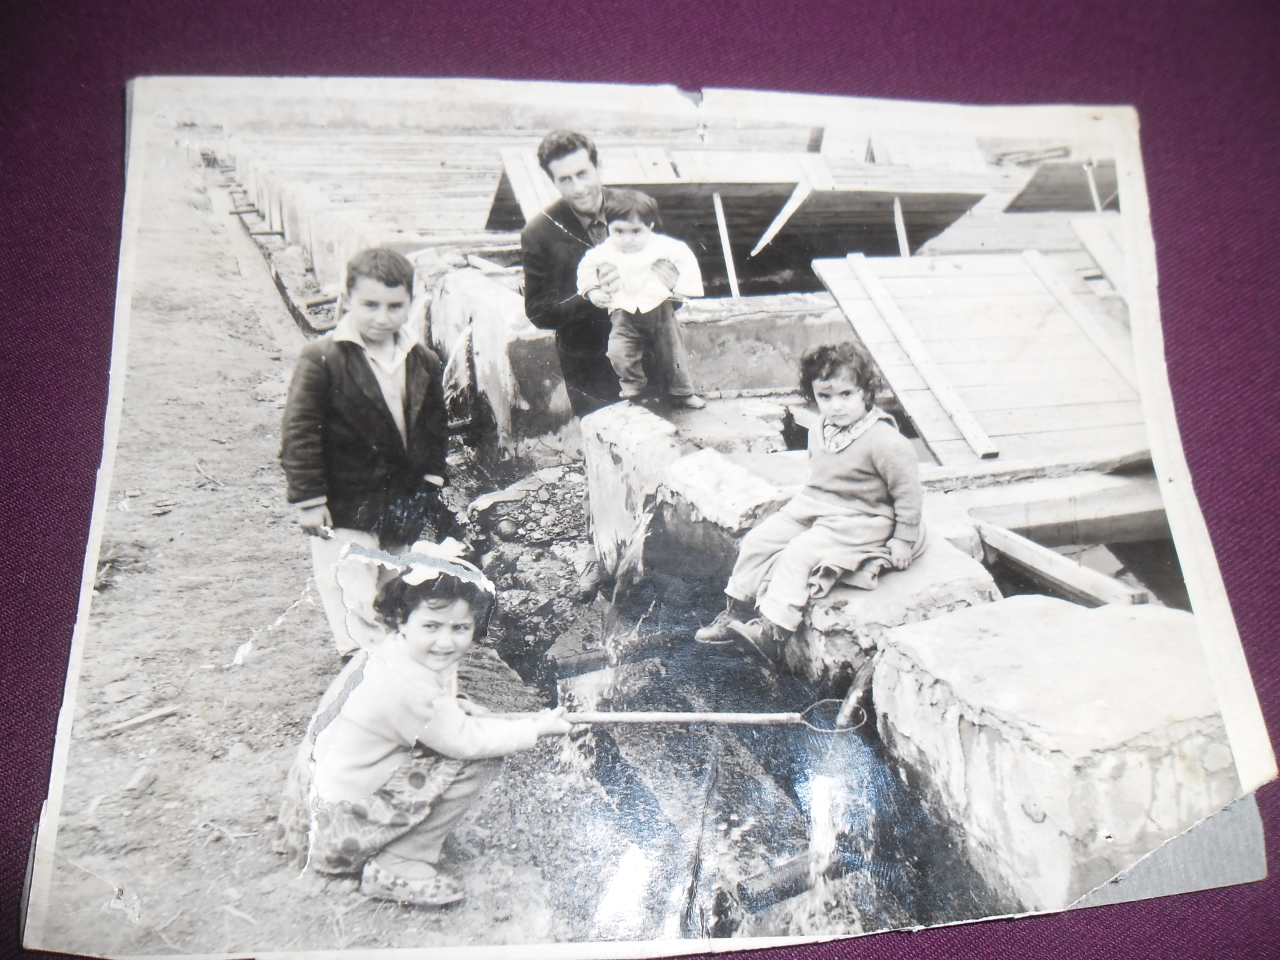 Լուսանկար՝  Ավետիք  Գառնիկի Նանագուլյանը (Մանկավարժ- կենդանաբան) դուստրերի և քրոջ որդու հետ